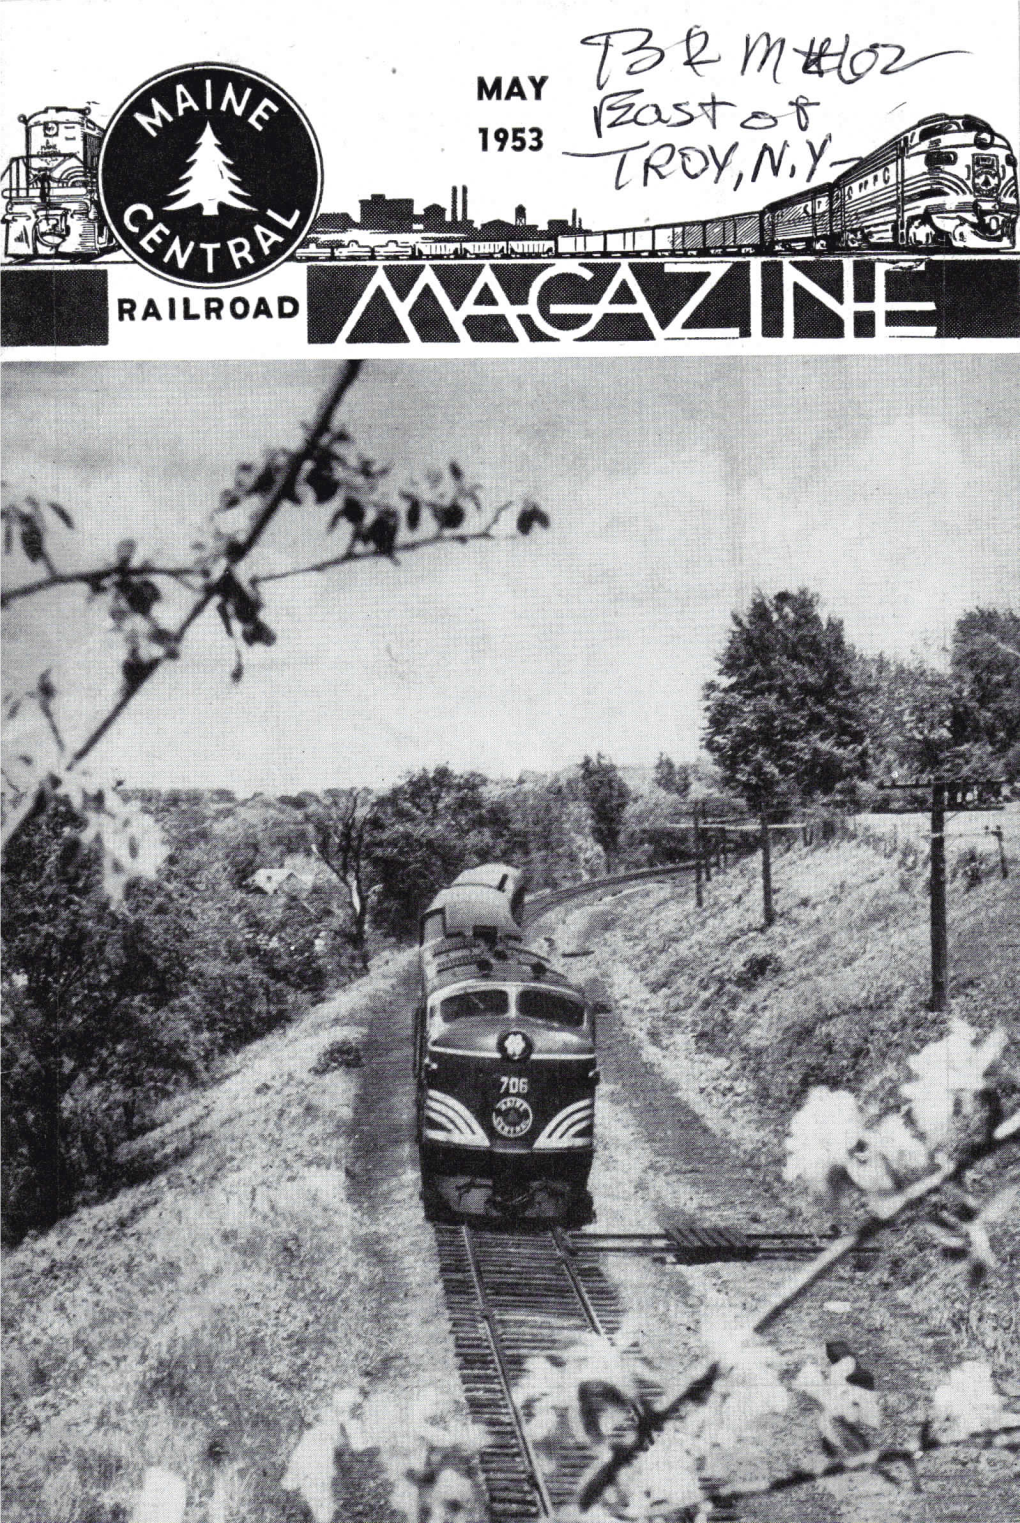 Maine Central Railroad Magazine